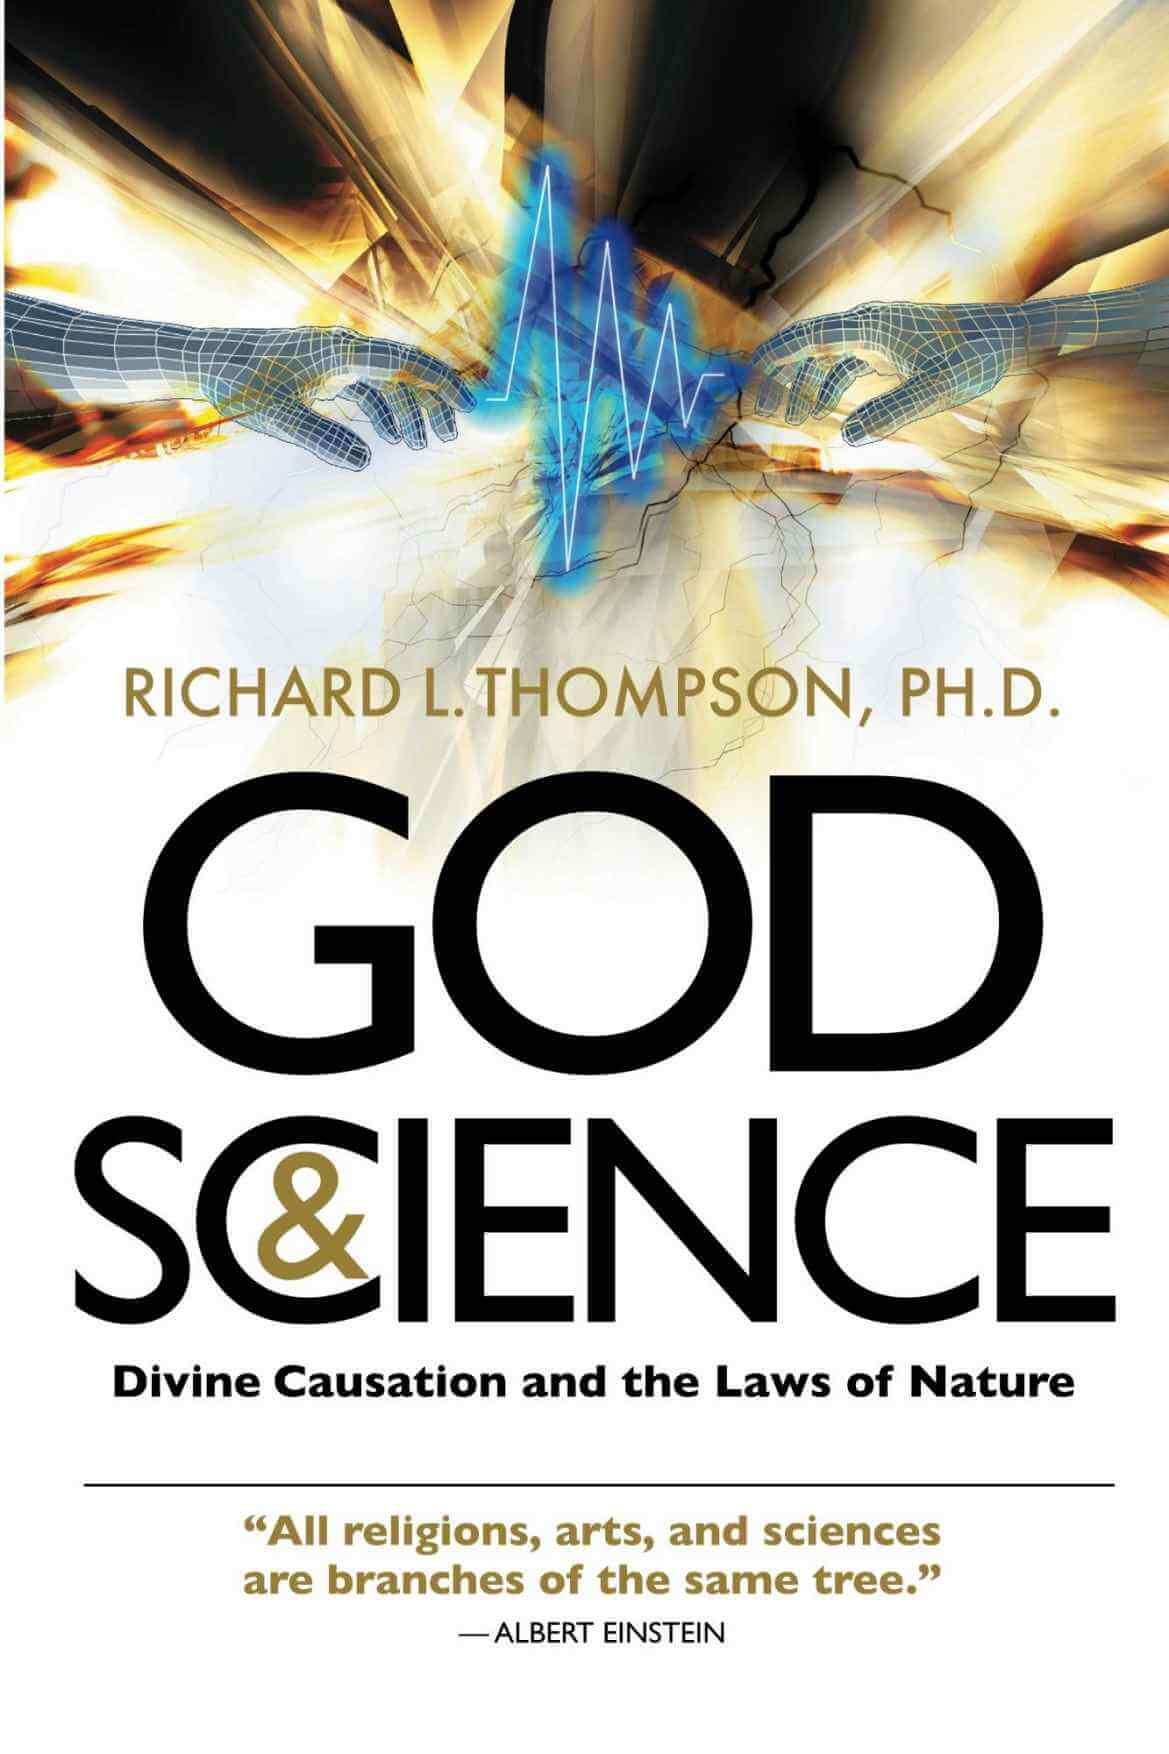 Gott und Wissenschaft - Göttliche Verursachung und die Naturgesetze